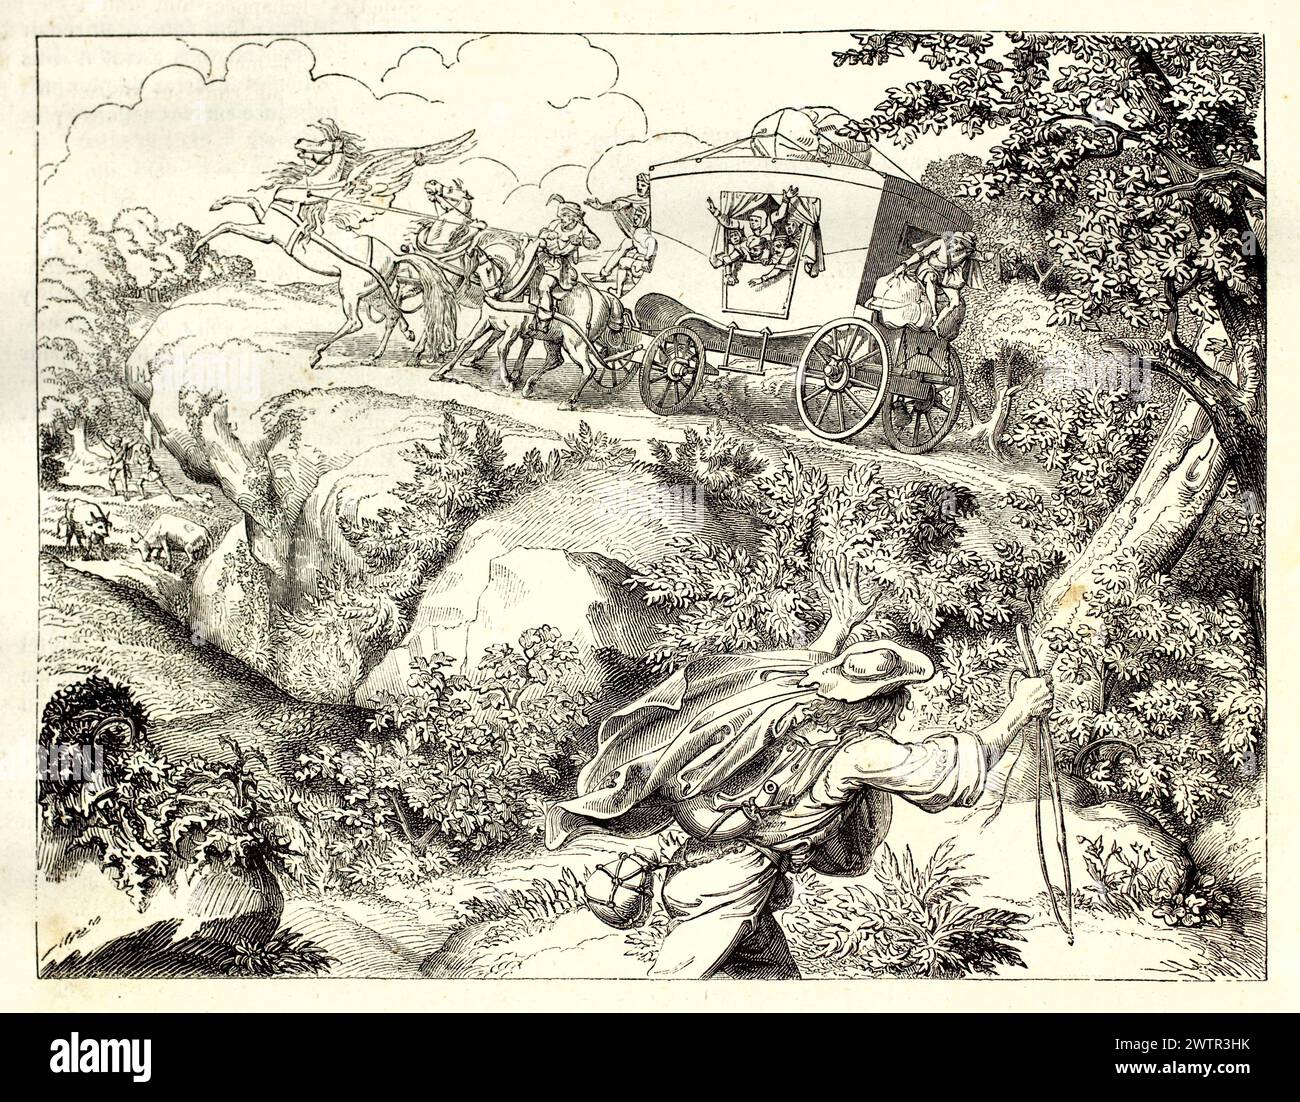 Vecchia illustrazione incisa di Pegasus sotto il giogo. Creato da Gagniet dopo Moritz Retzsch, pubblicato su Magasin Pittoresque, Parigi, 1852 Foto Stock